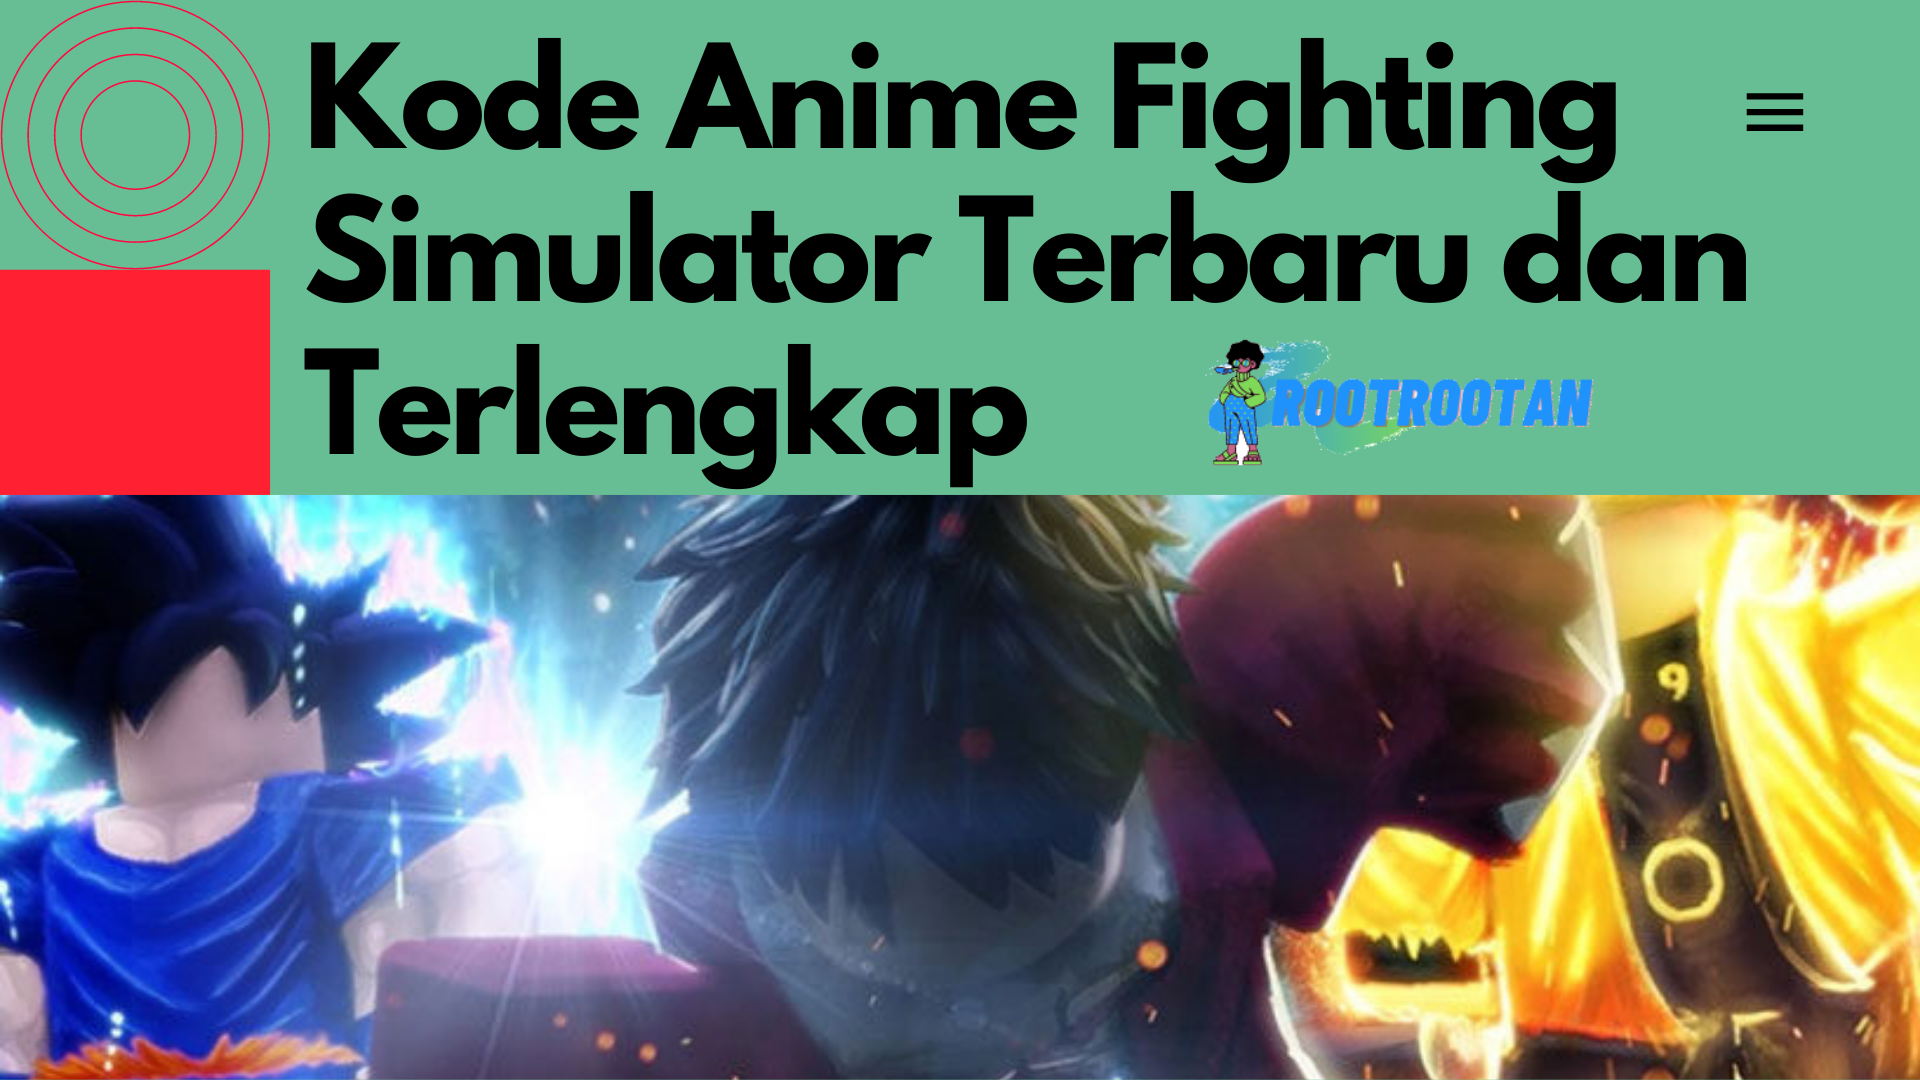 Kode Anime Fighting Simulator Terbaru dan Terlengkap